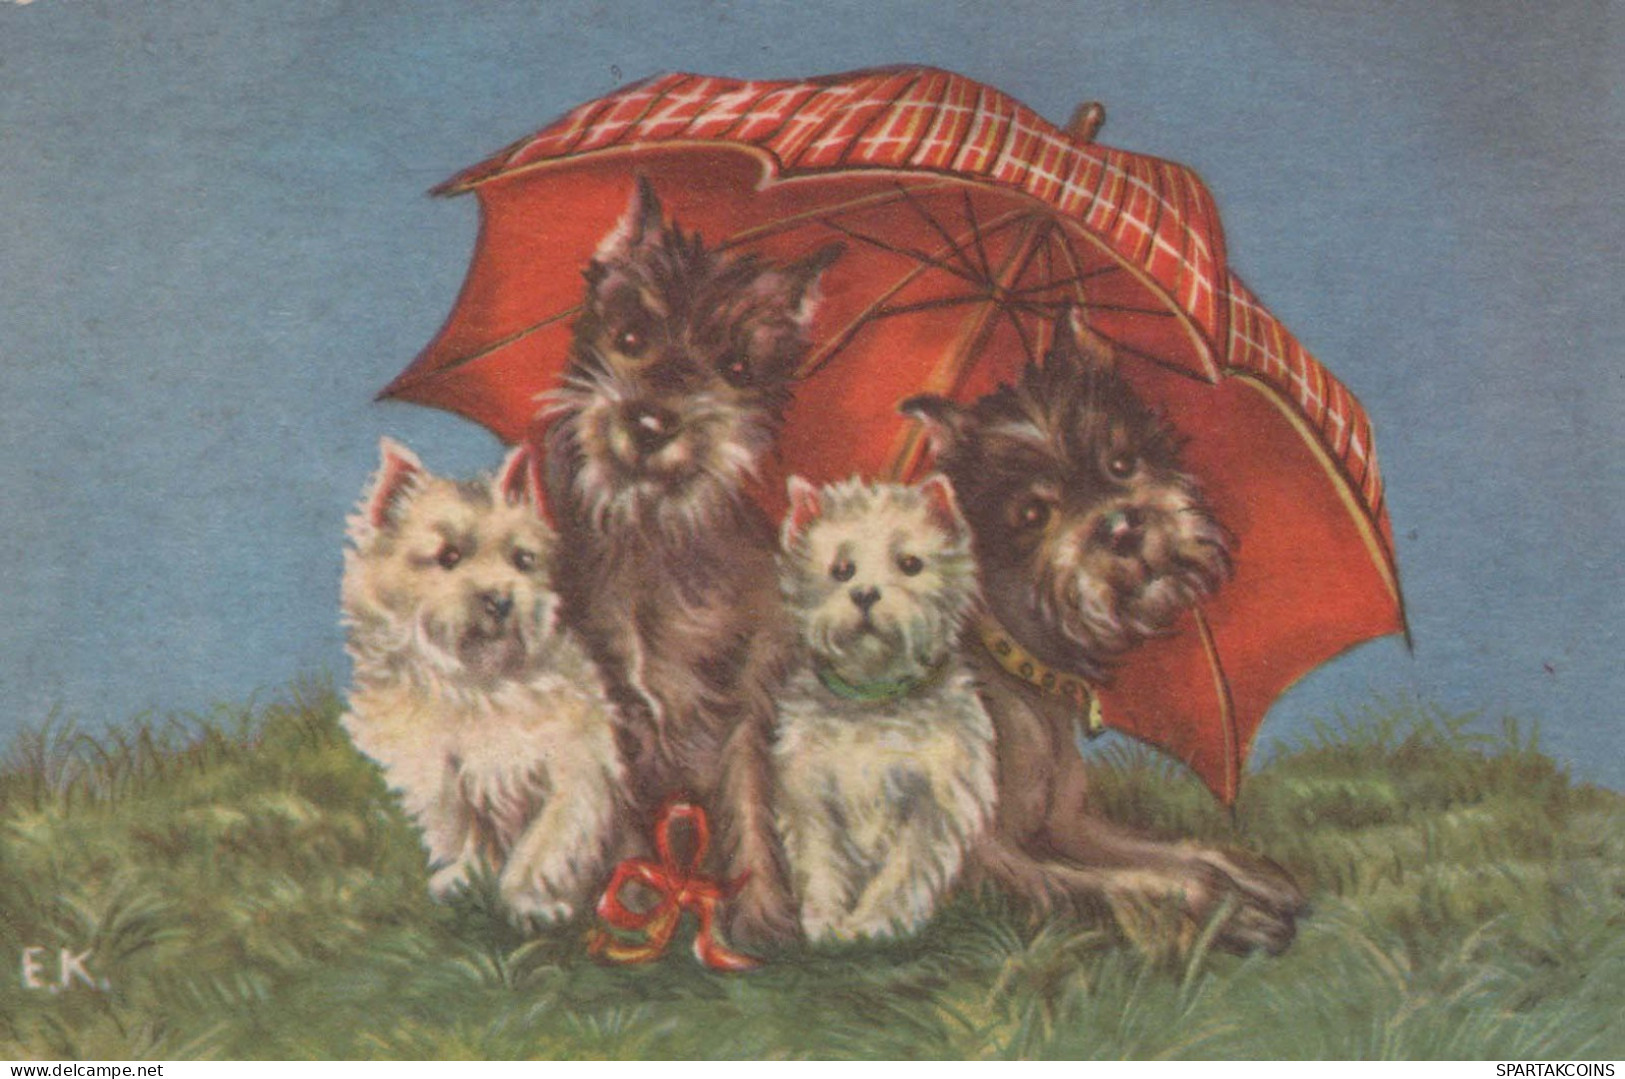 HUND Tier Vintage Ansichtskarte Postkarte CPA #PKE800.A - Honden